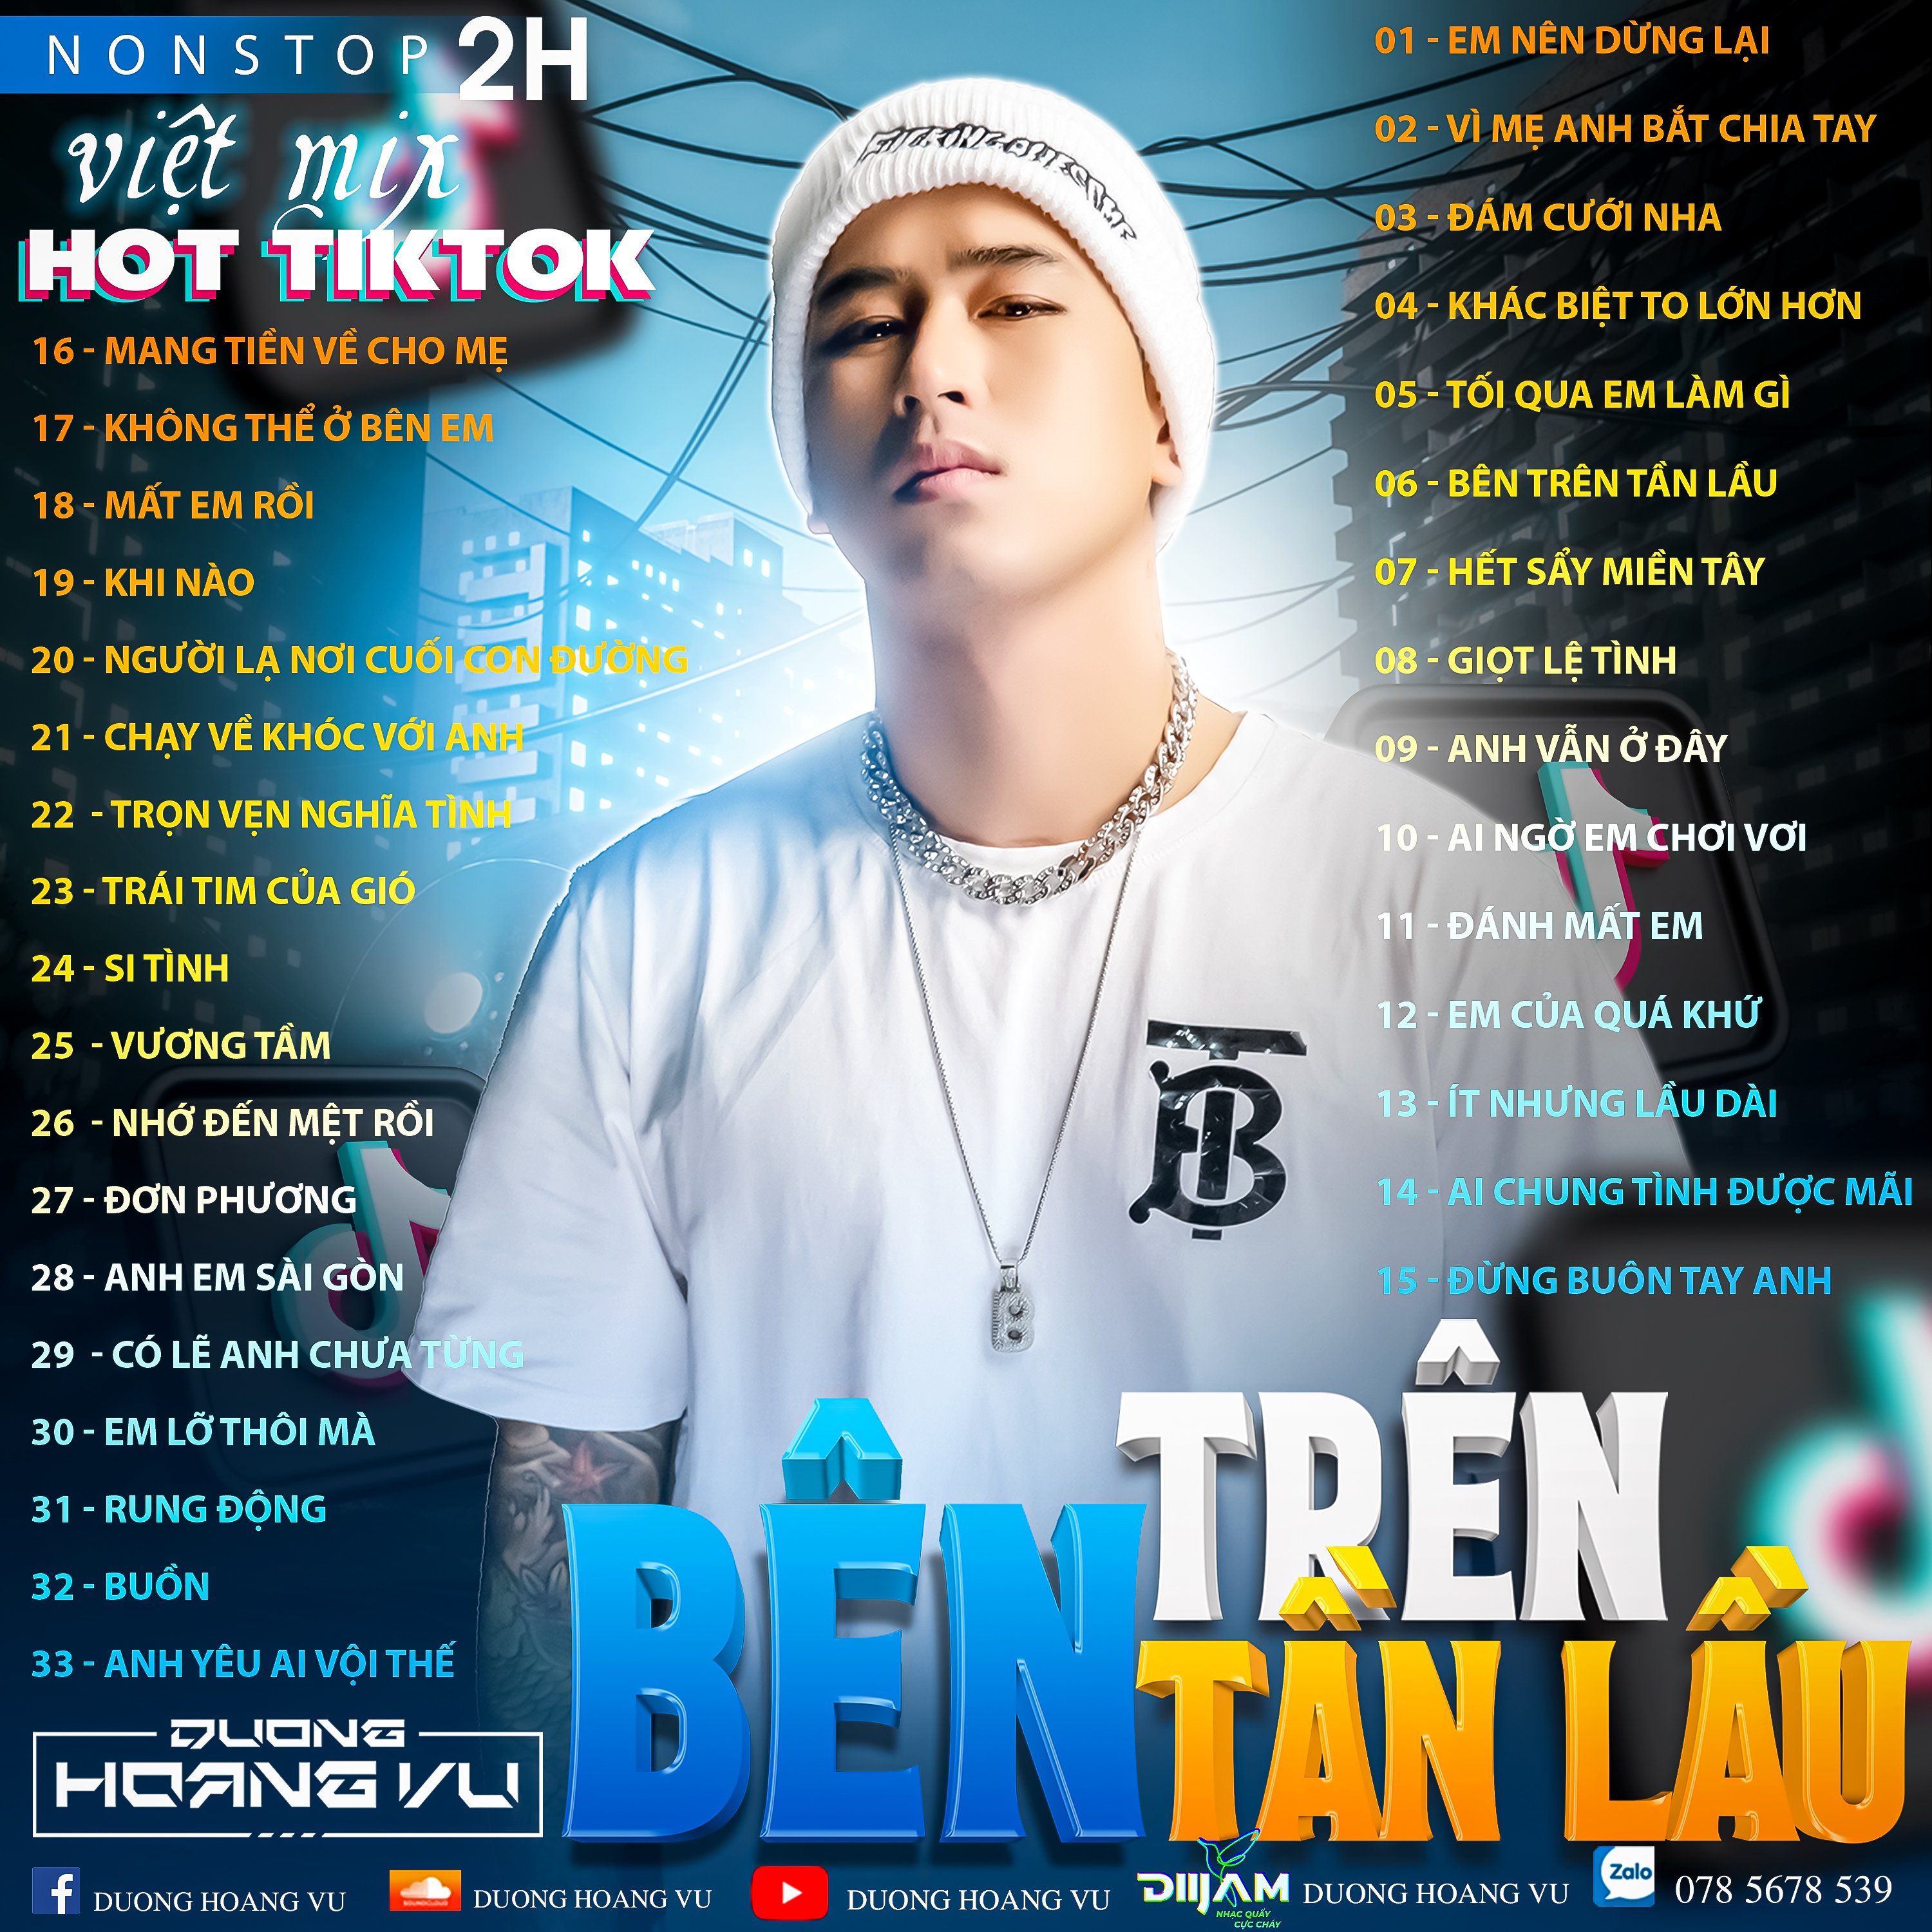 Ներբեռնե (Demo ) Nst Việt Mix Hot tiktok 2h - 2022 - DJ Dương Hoàng Vũ Mix Mua Full IB Zalo 078.5678.539